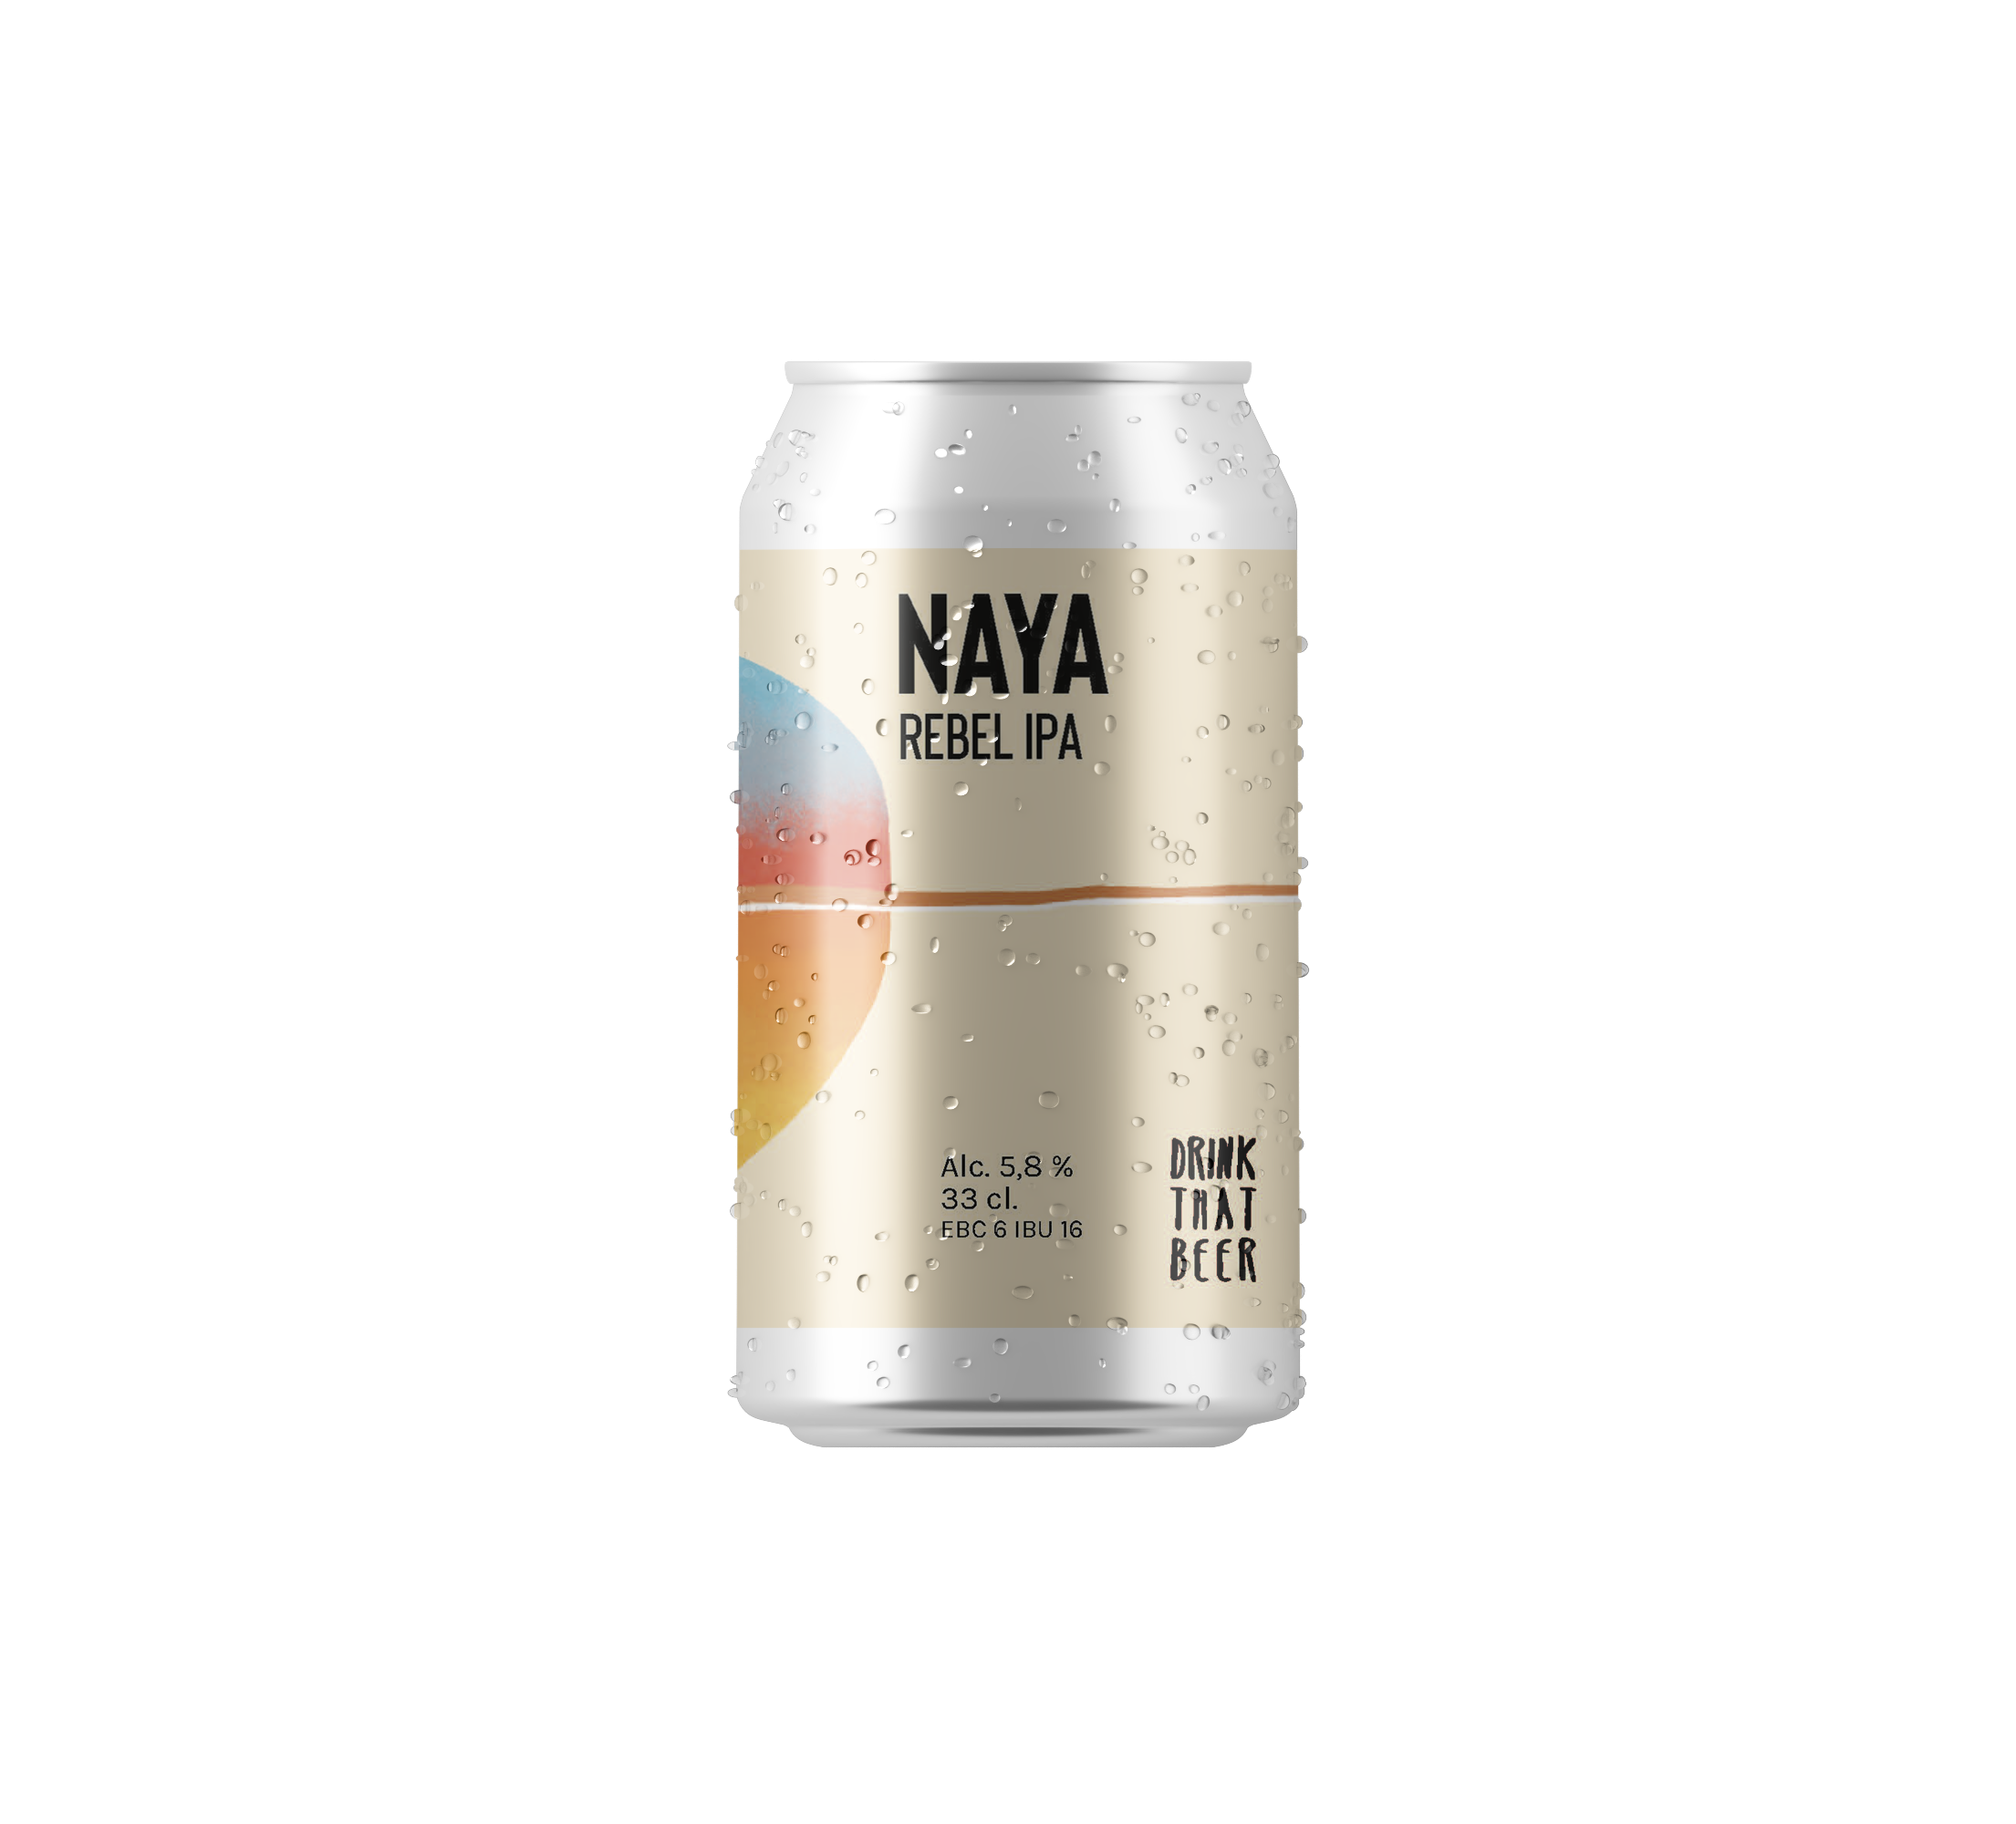 La Naya sort des codes, amère mais sans plus, trouble mais pas trop. Ses arômes vous feront voyager dans le sud: citrus, pin et une pointe subtile de pêch